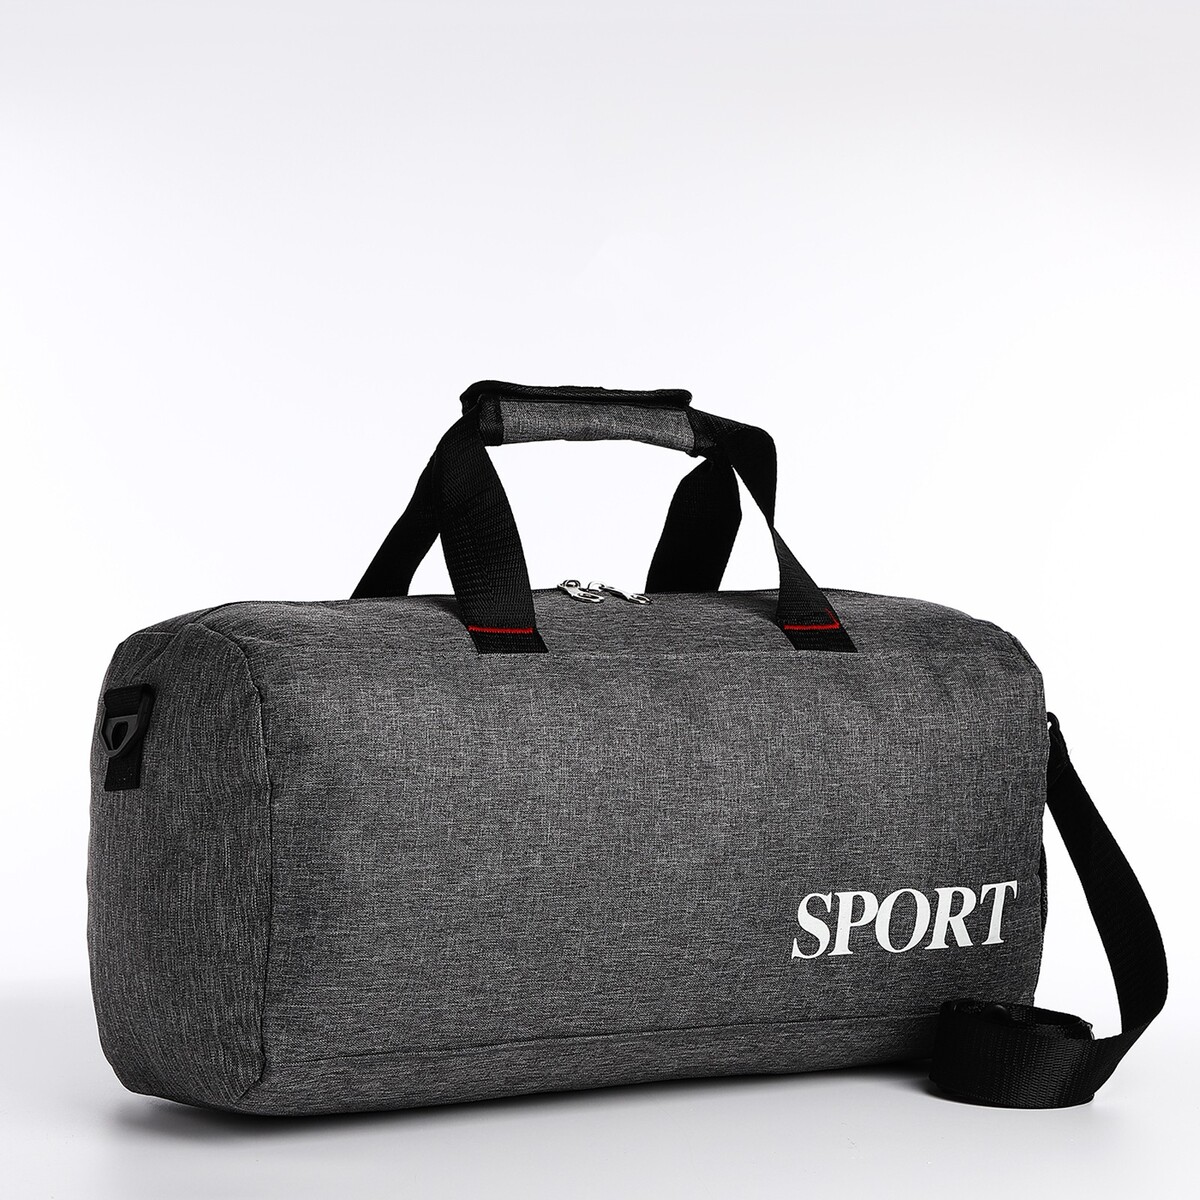 Сумка спортивная на молнии, длинный ремень, цвет серый сумка спортивная на молнии длинный ремень серый